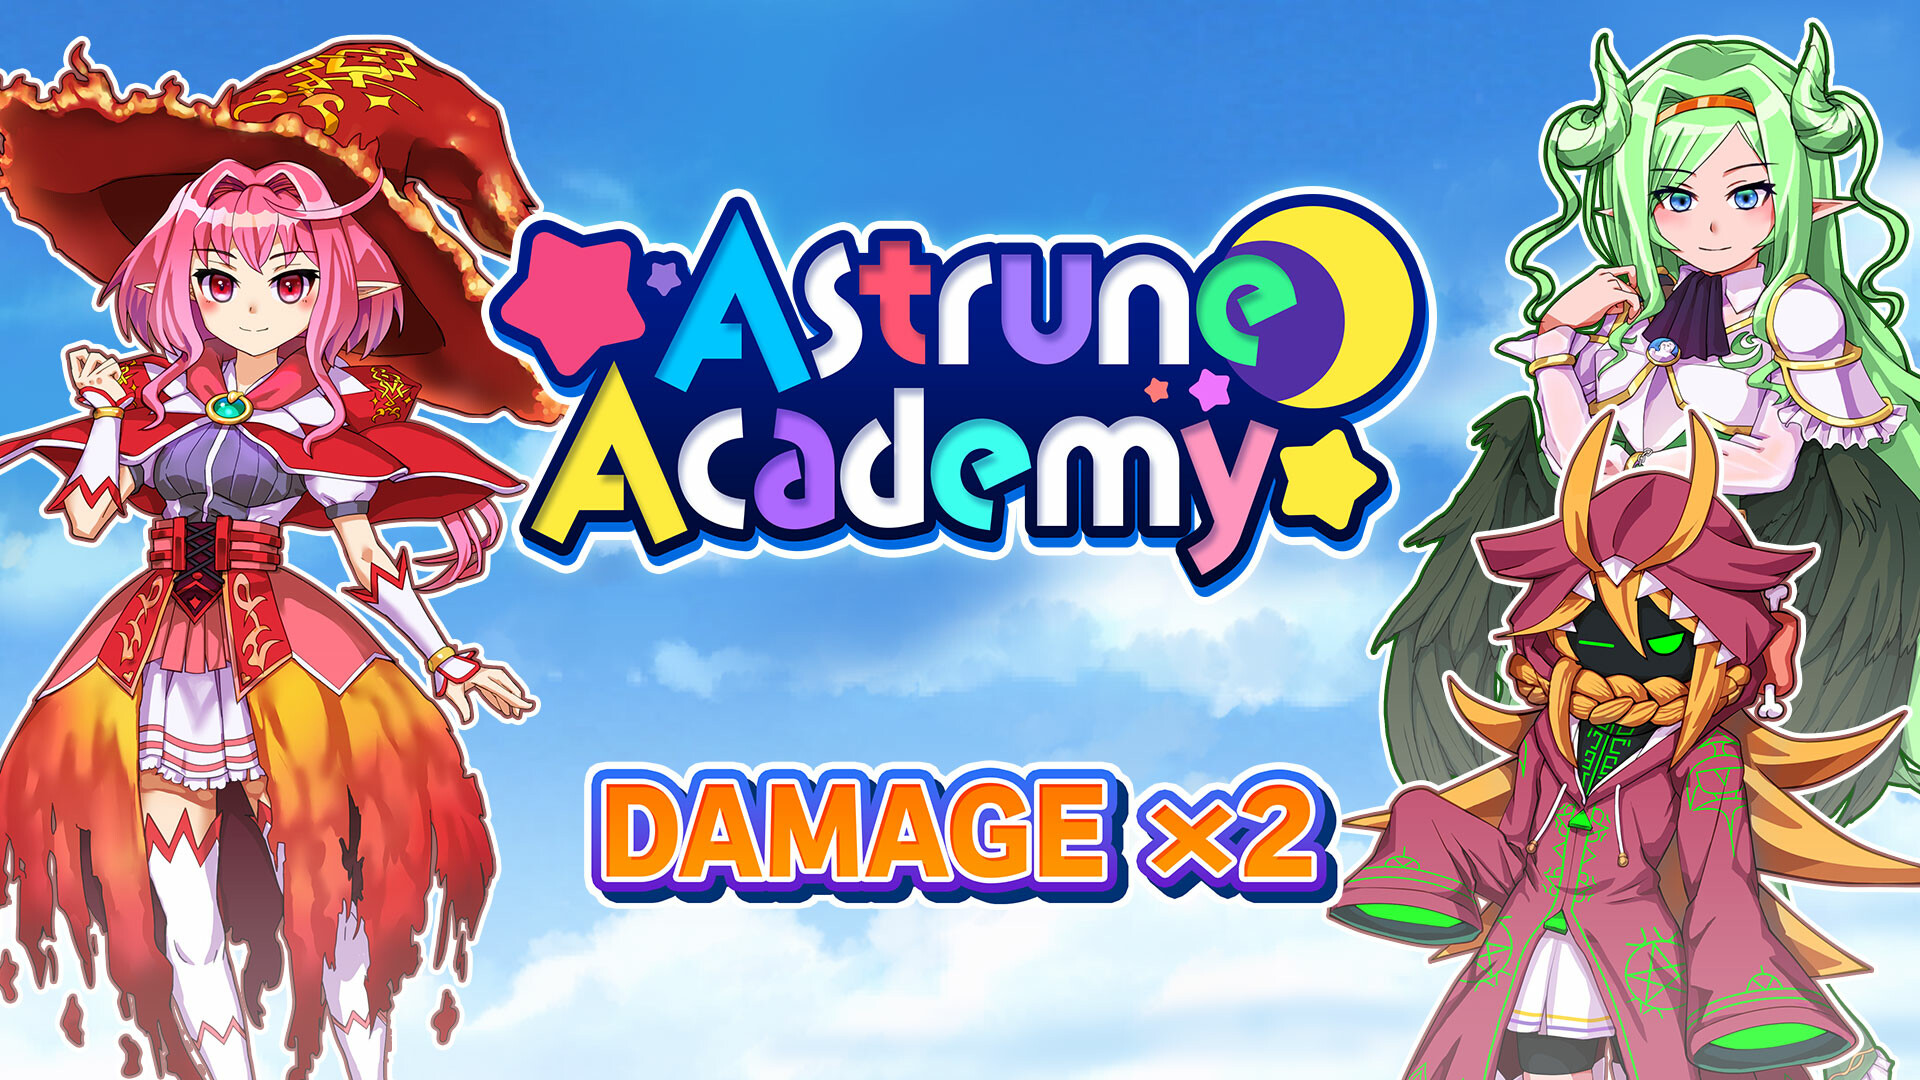 Damage x2 - Astrune Academy Featured Screenshot #1